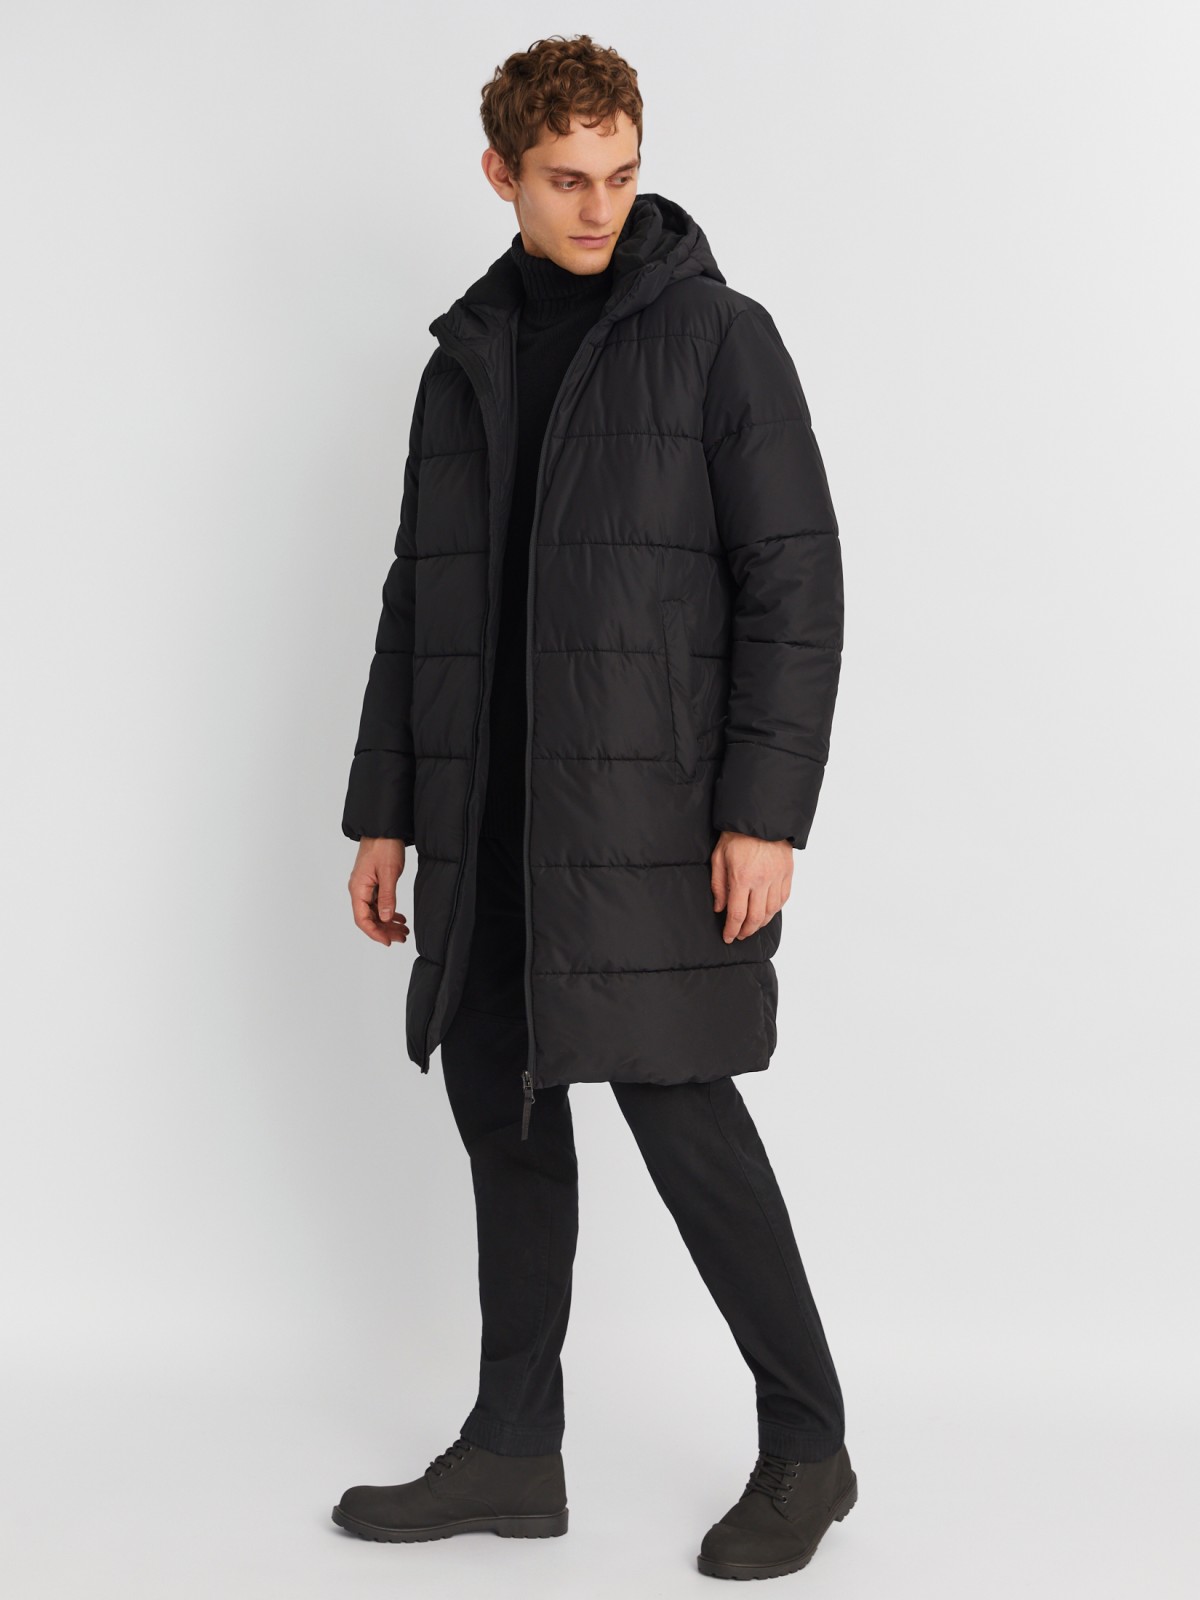 Тёплая стёганая куртка удлинённого силуэта с капюшоном zolla 01342522J064, цвет черный, размер M - фото 2